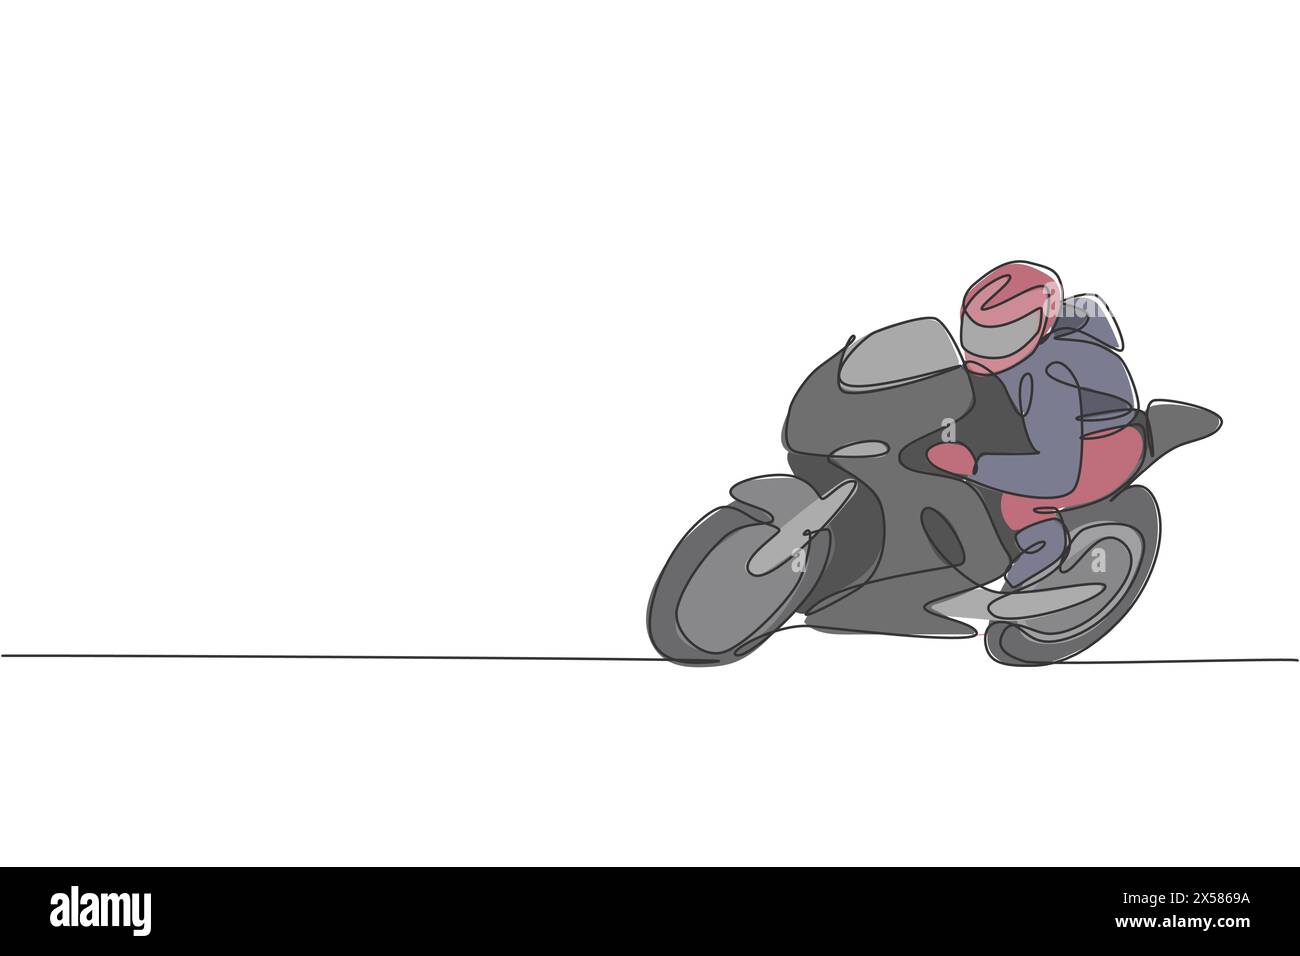 Eine durchgehende Linienzeichnung junger Moto-Biker, die auf der Rennstrecke üben. Grafik-Vektor-Illustration des Superbike-Rennkonzepts. Dynamisches Single-lin Stock Vektor